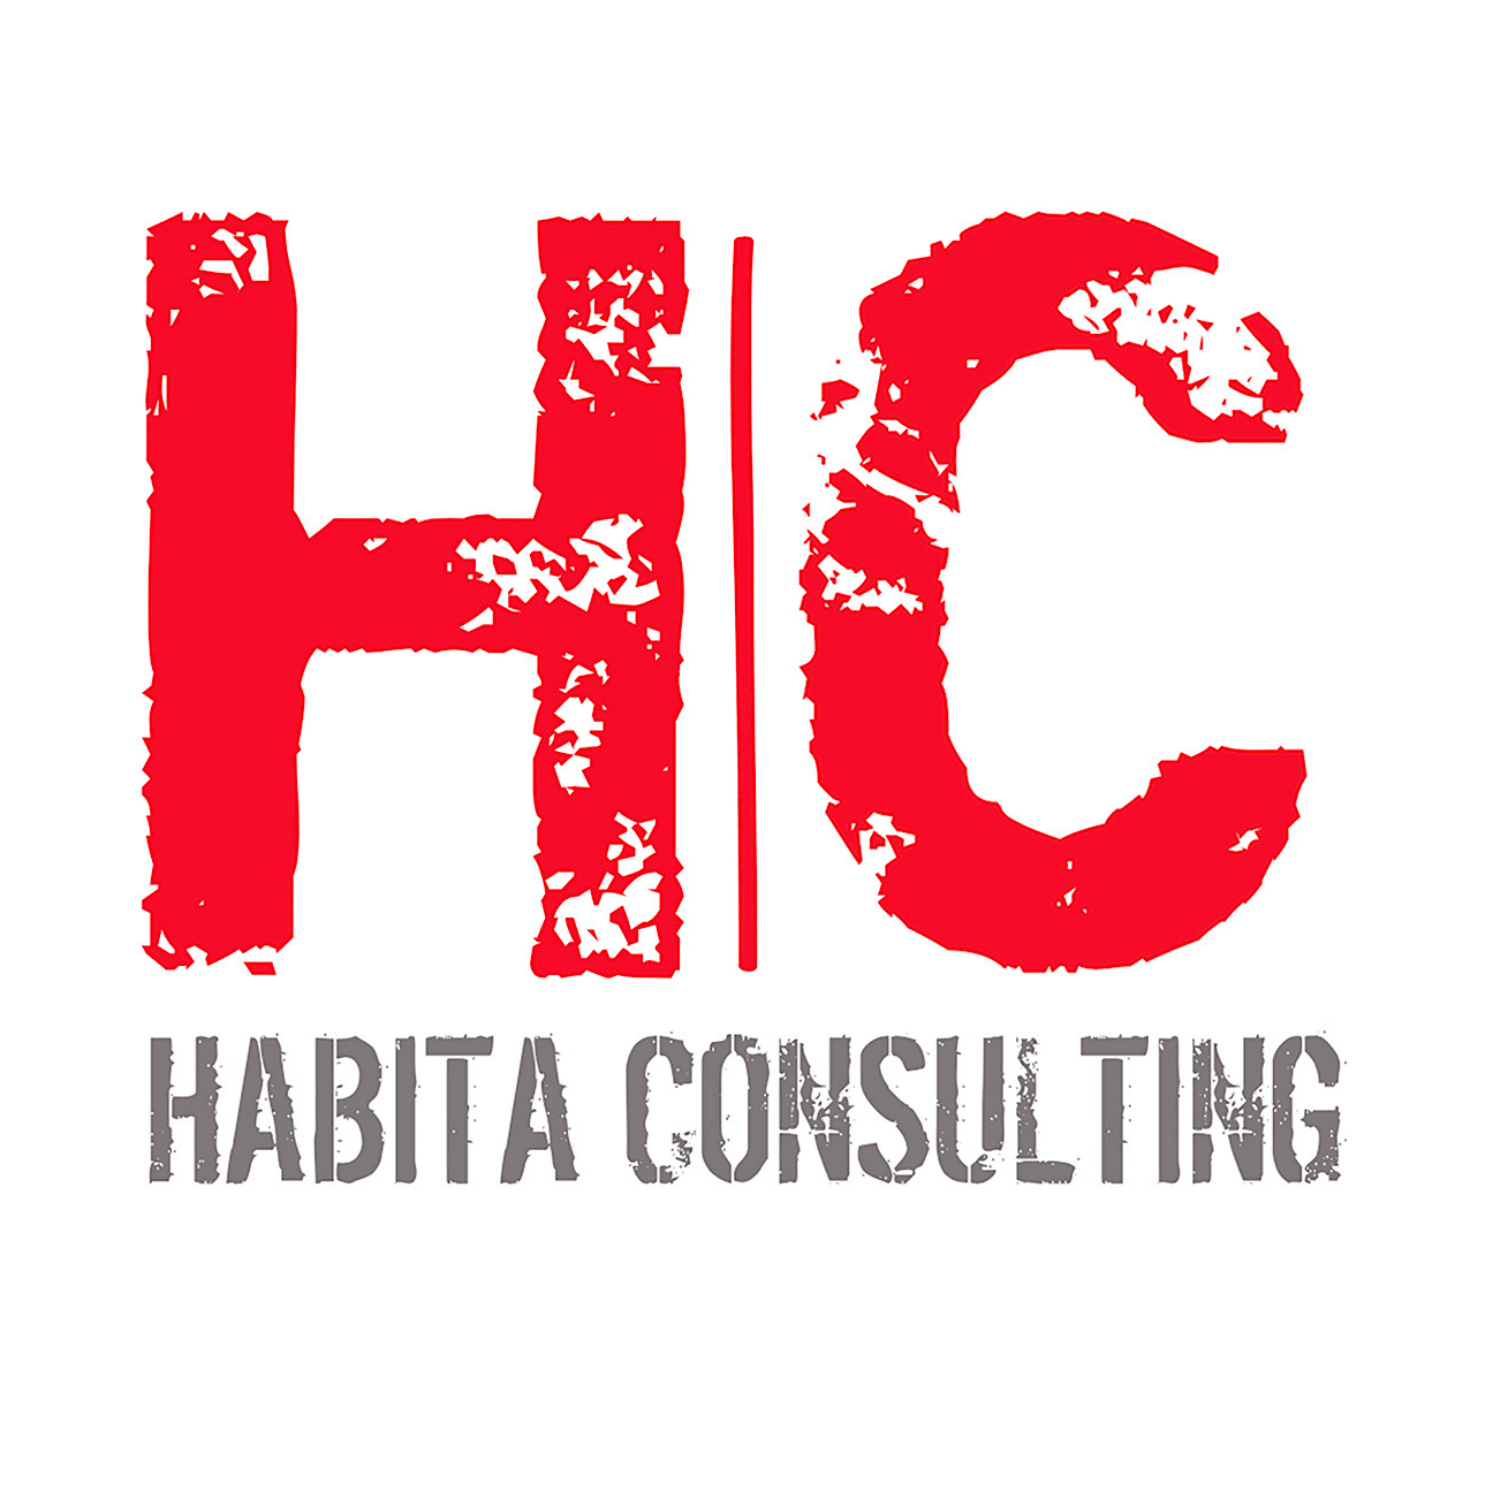 (c) Habitaconsulting.com